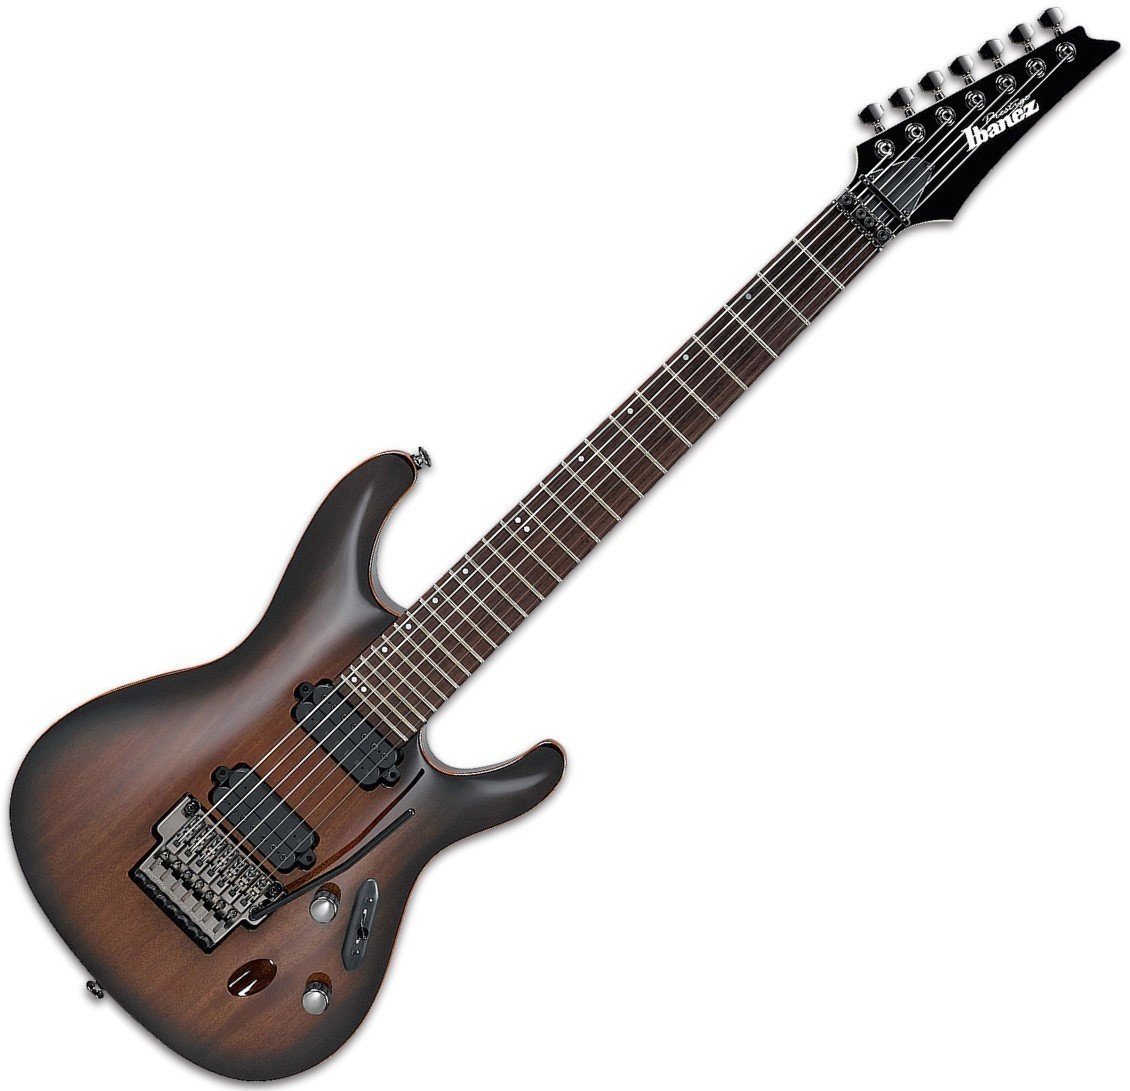 7-strenget elektrisk guitar Ibanez S5527 Prestige Transparent Black Sunburst